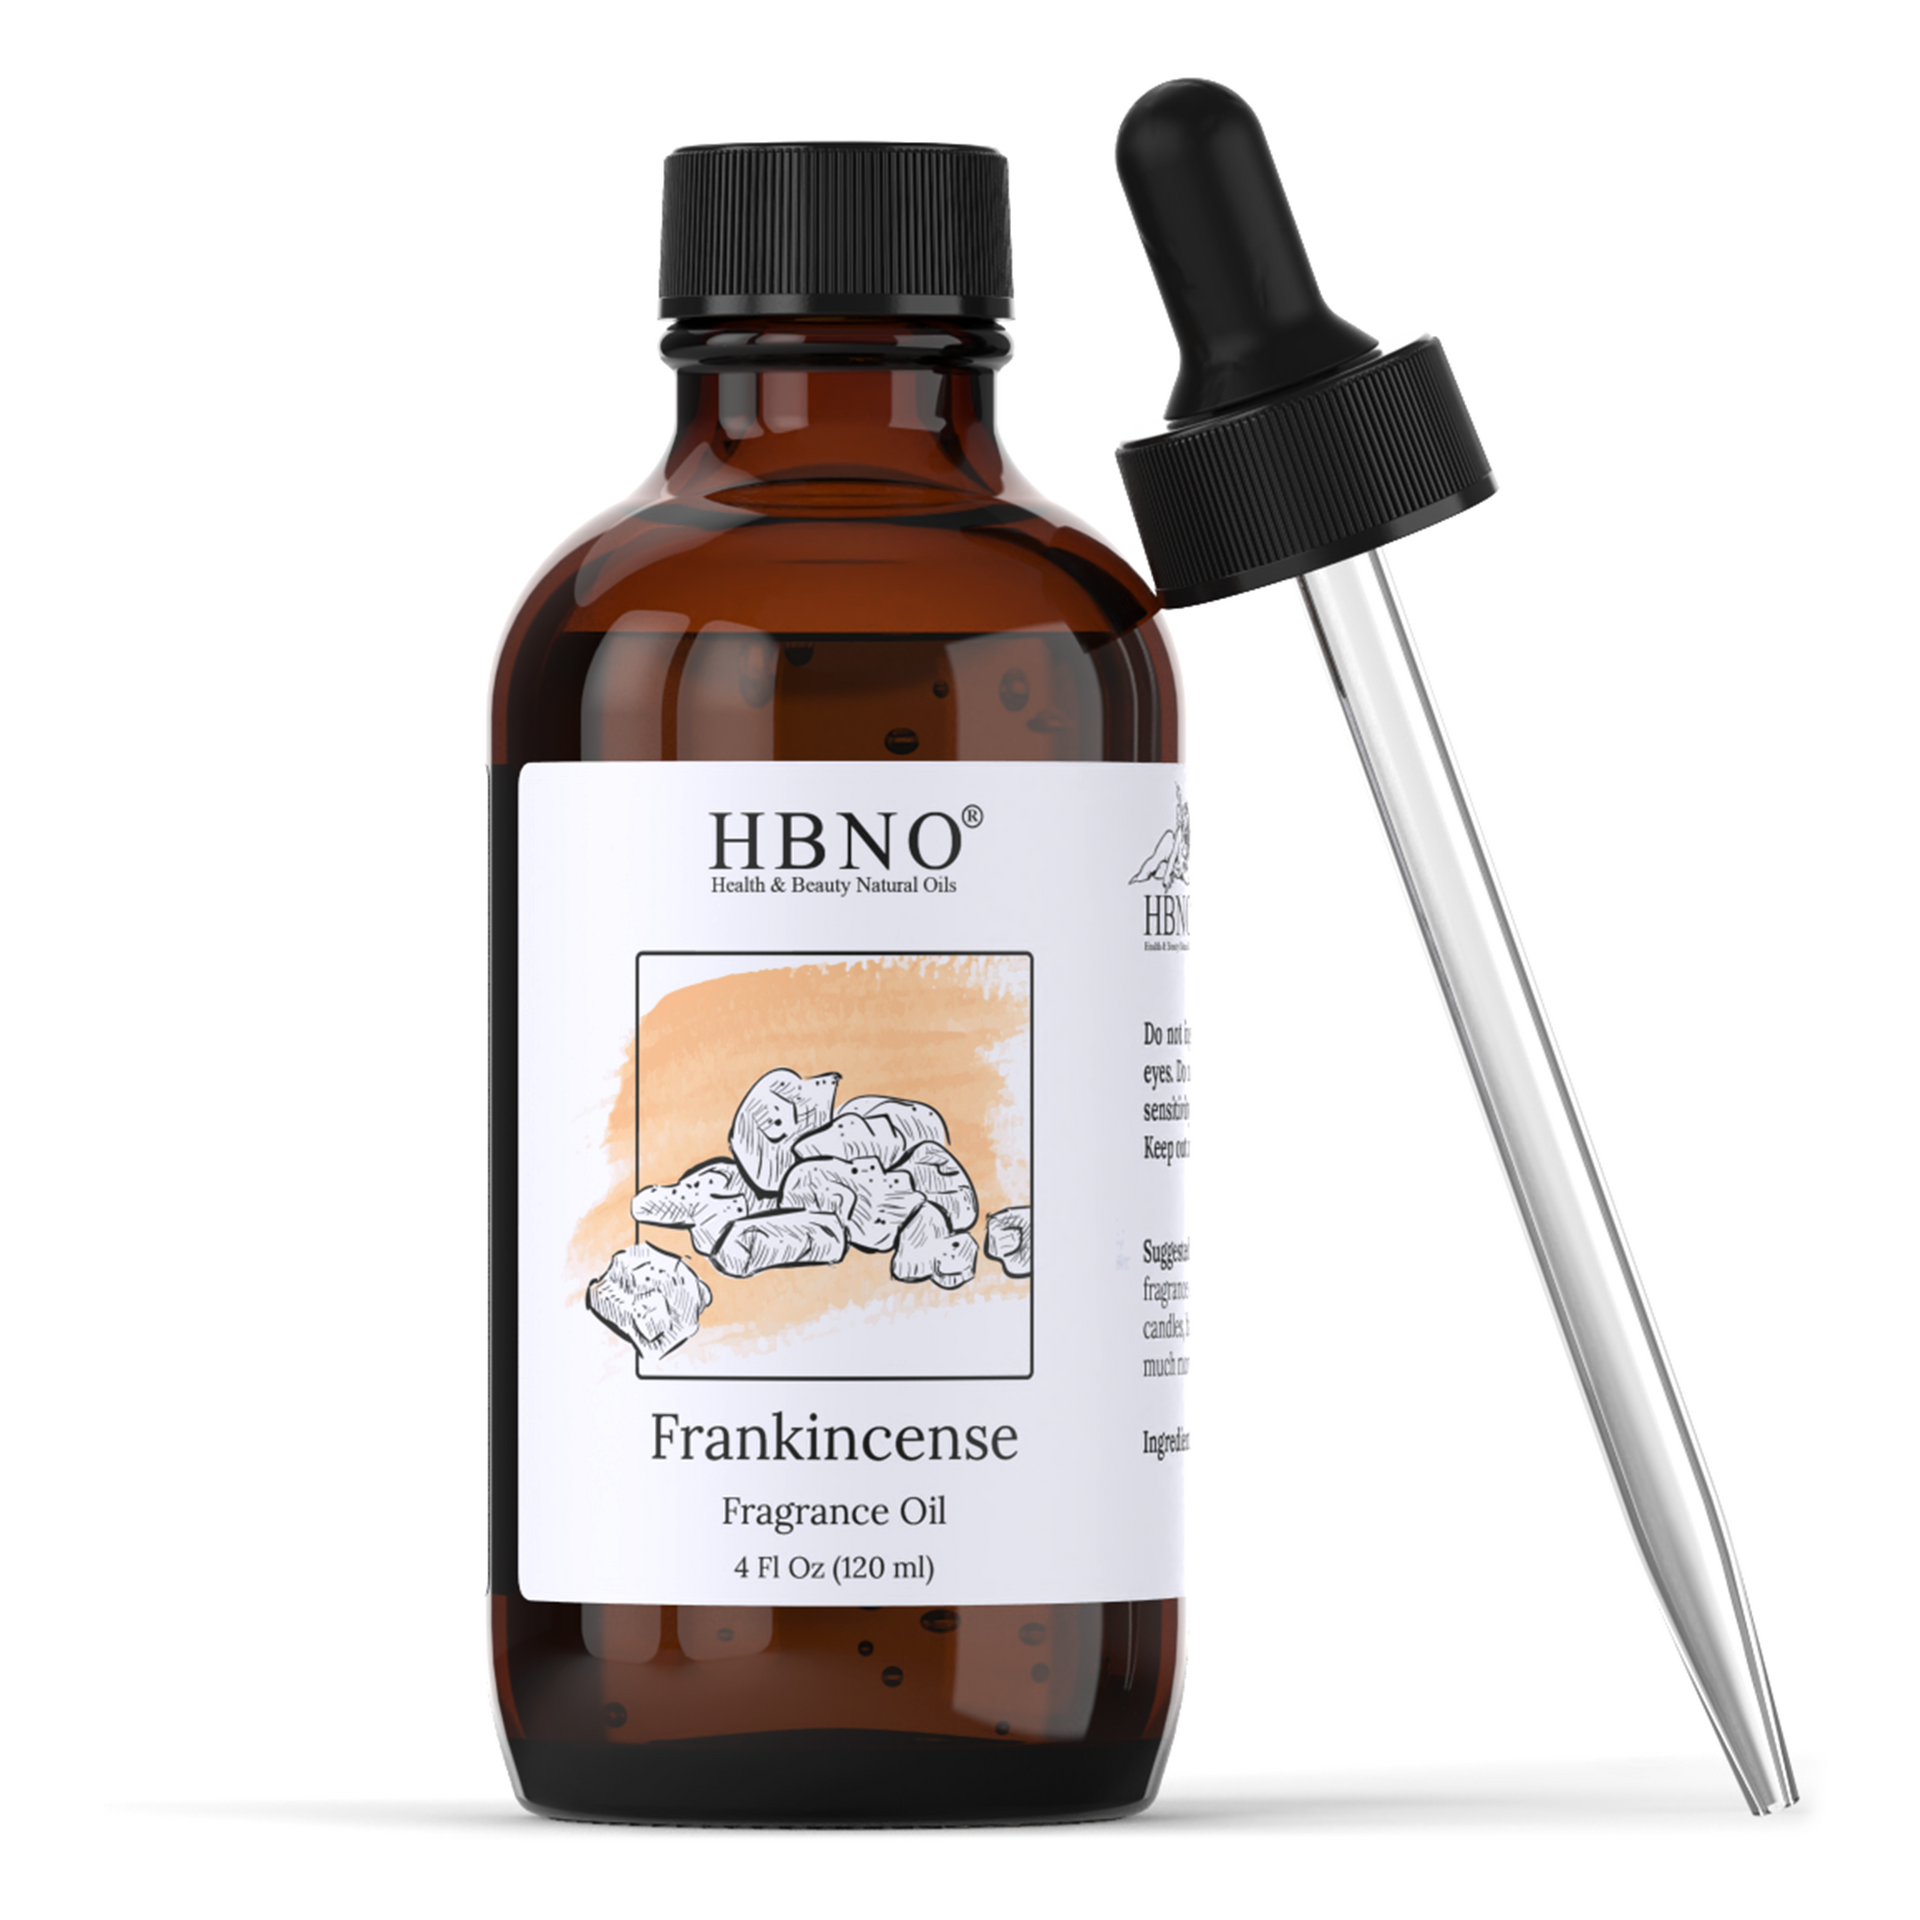 Frankincense Fragrance